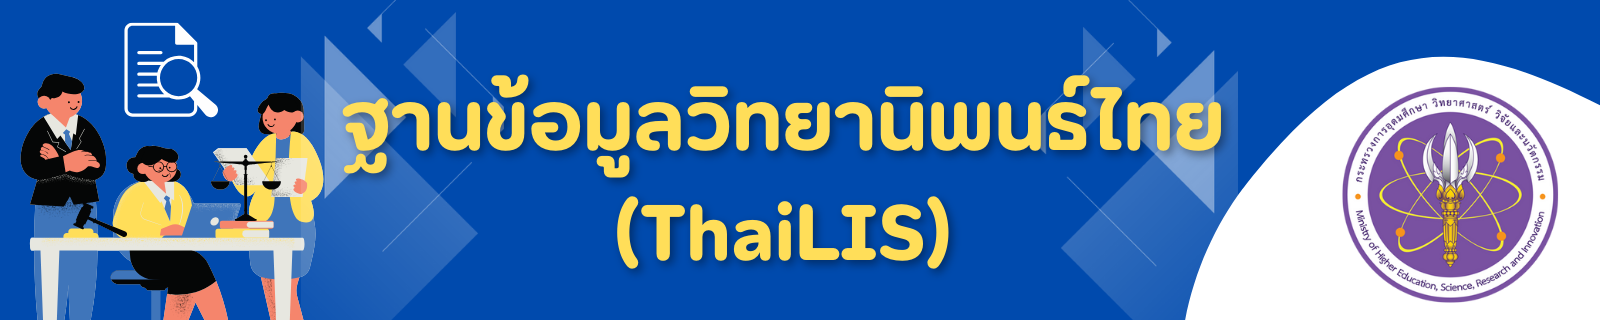 ฐานข้อมูลวิทยานิพนธ์ไทย (ThaiLIS)